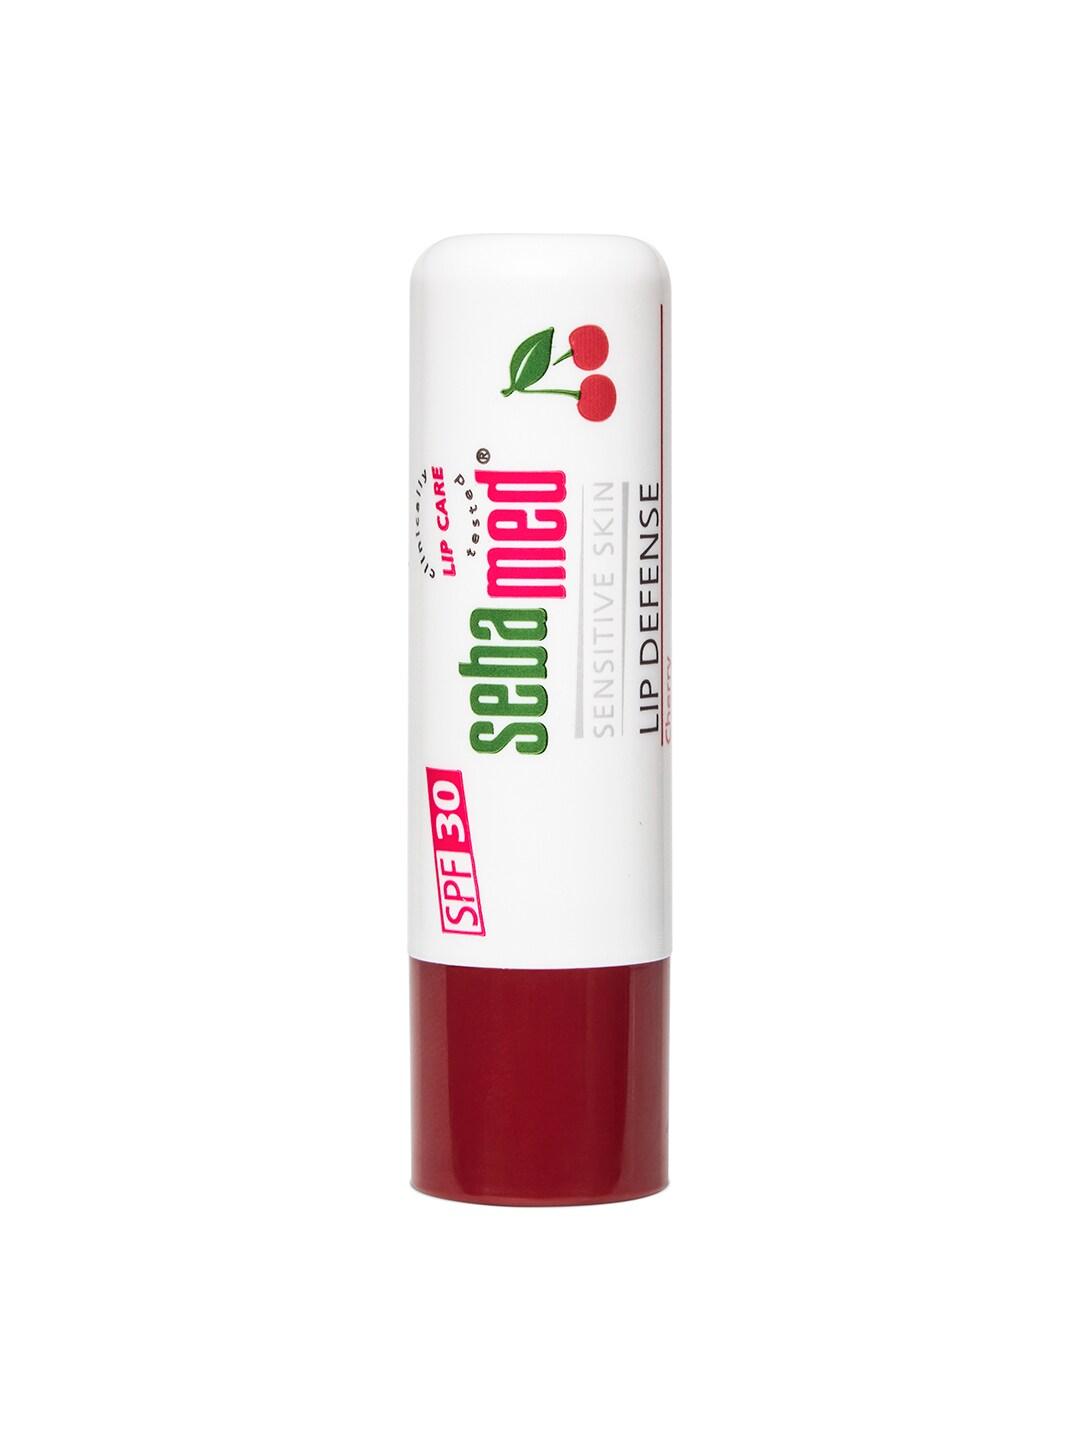 Sebamed SPF30 Lip Defense Lip Balm for Sensitive Skin 4.8g - Cherry